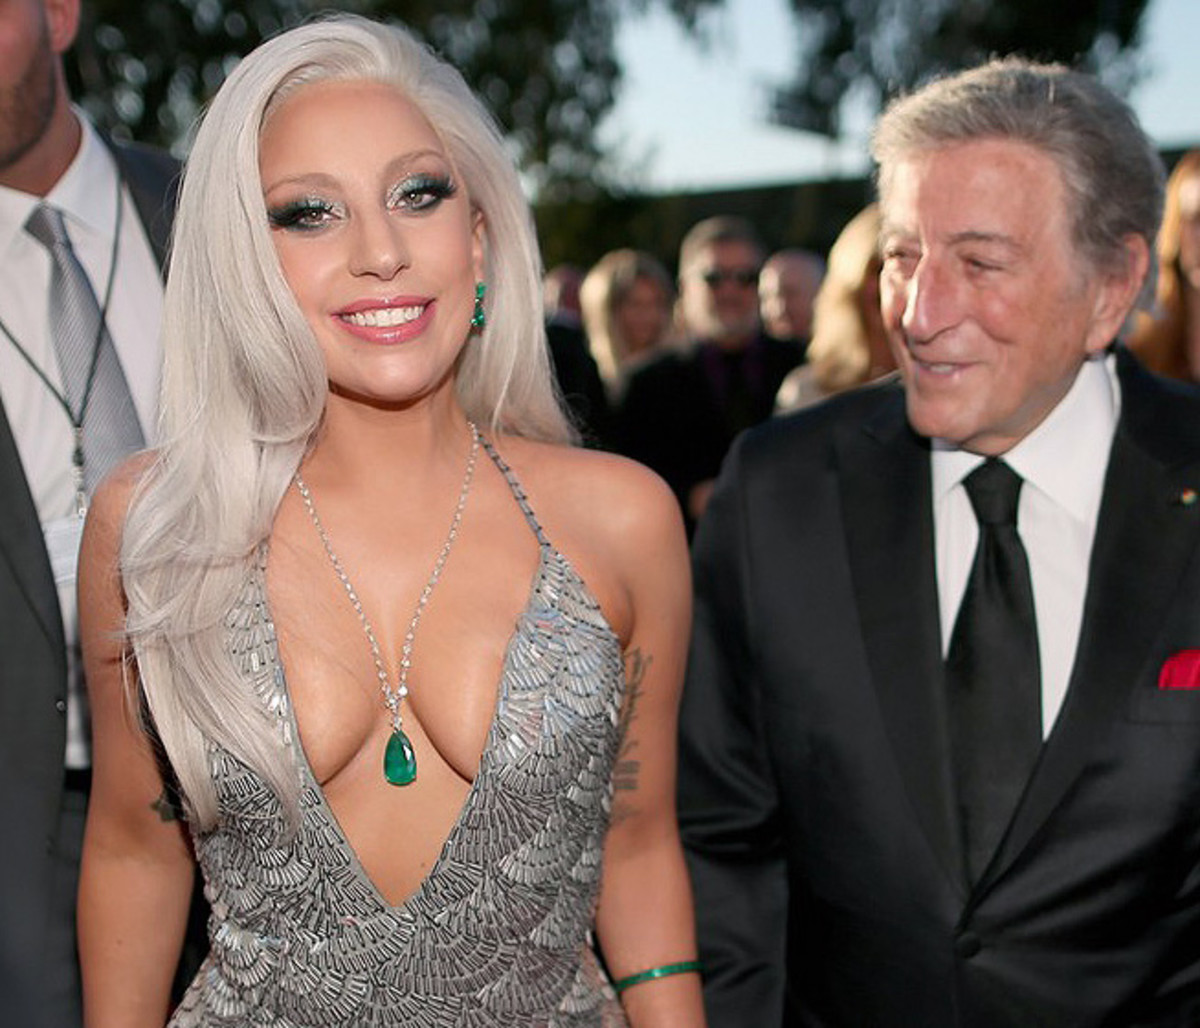 Lady Gaga's winged smoky eye makeup at the 2015 Grammy Awards